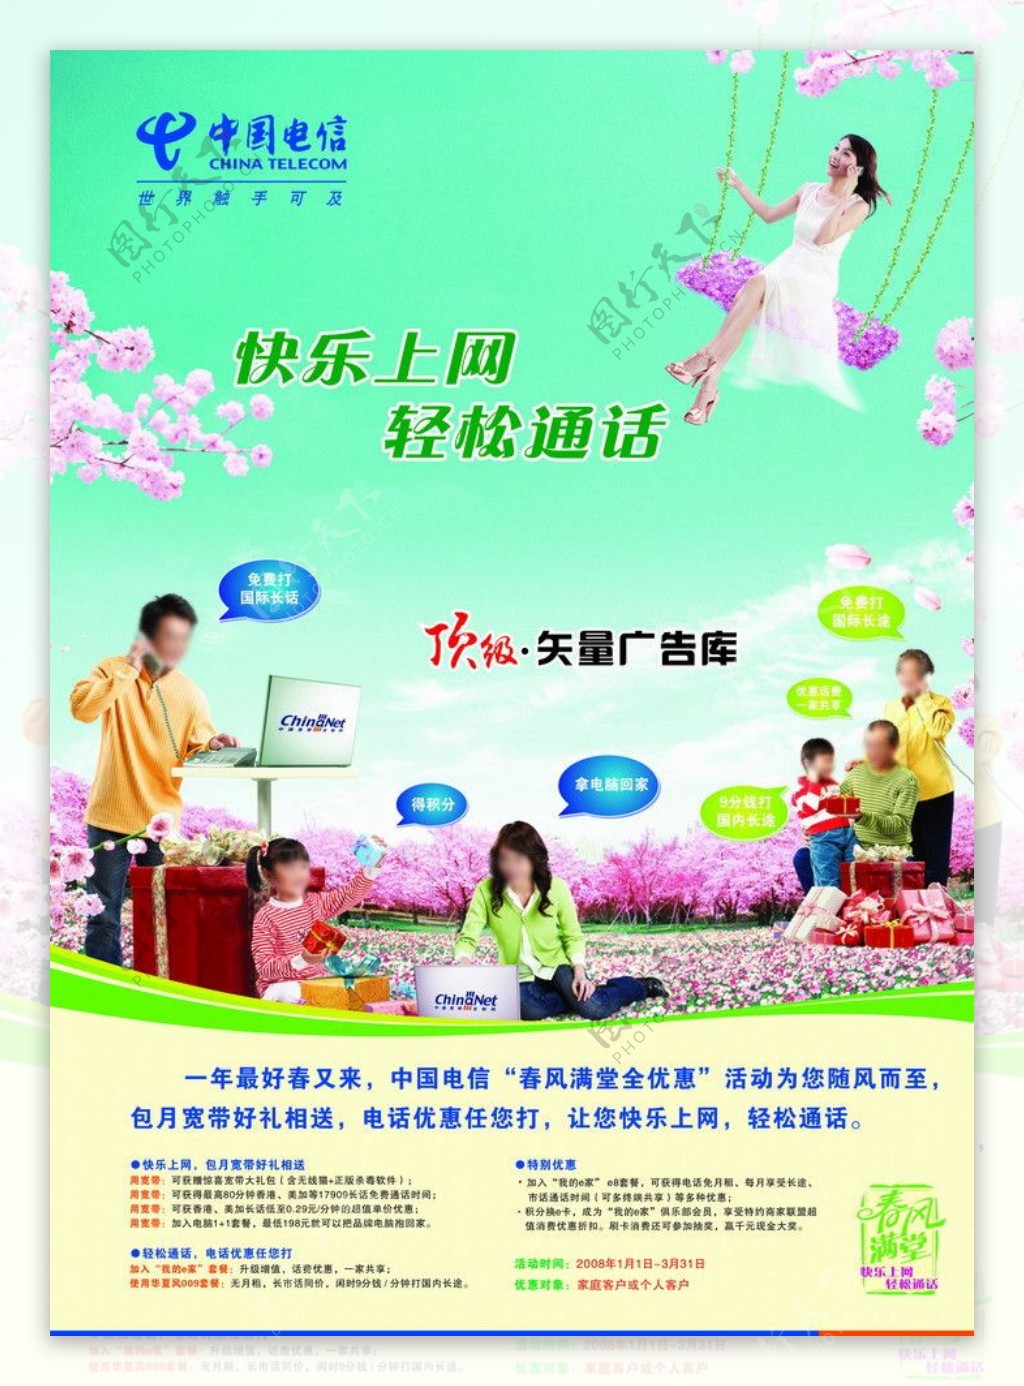 中国电信上网广告图片